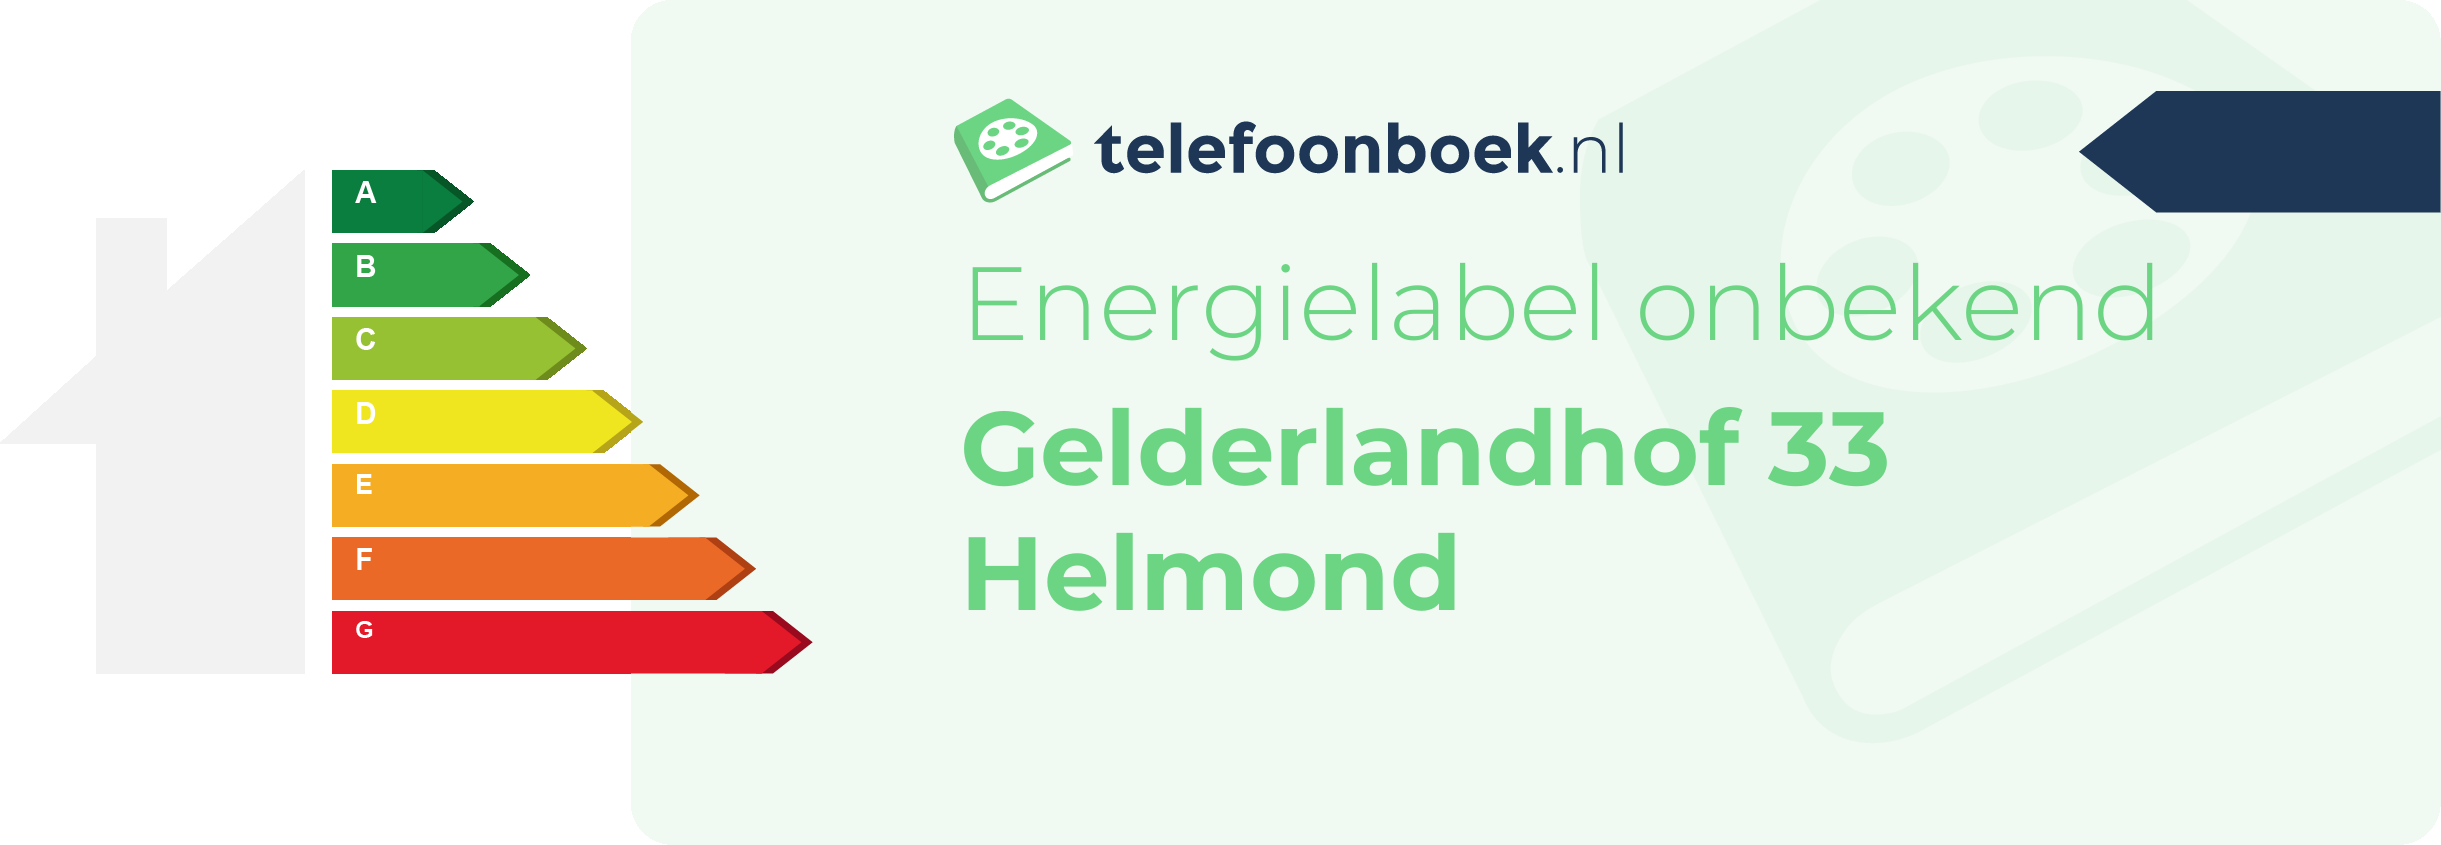 Energielabel Gelderlandhof 33 Helmond